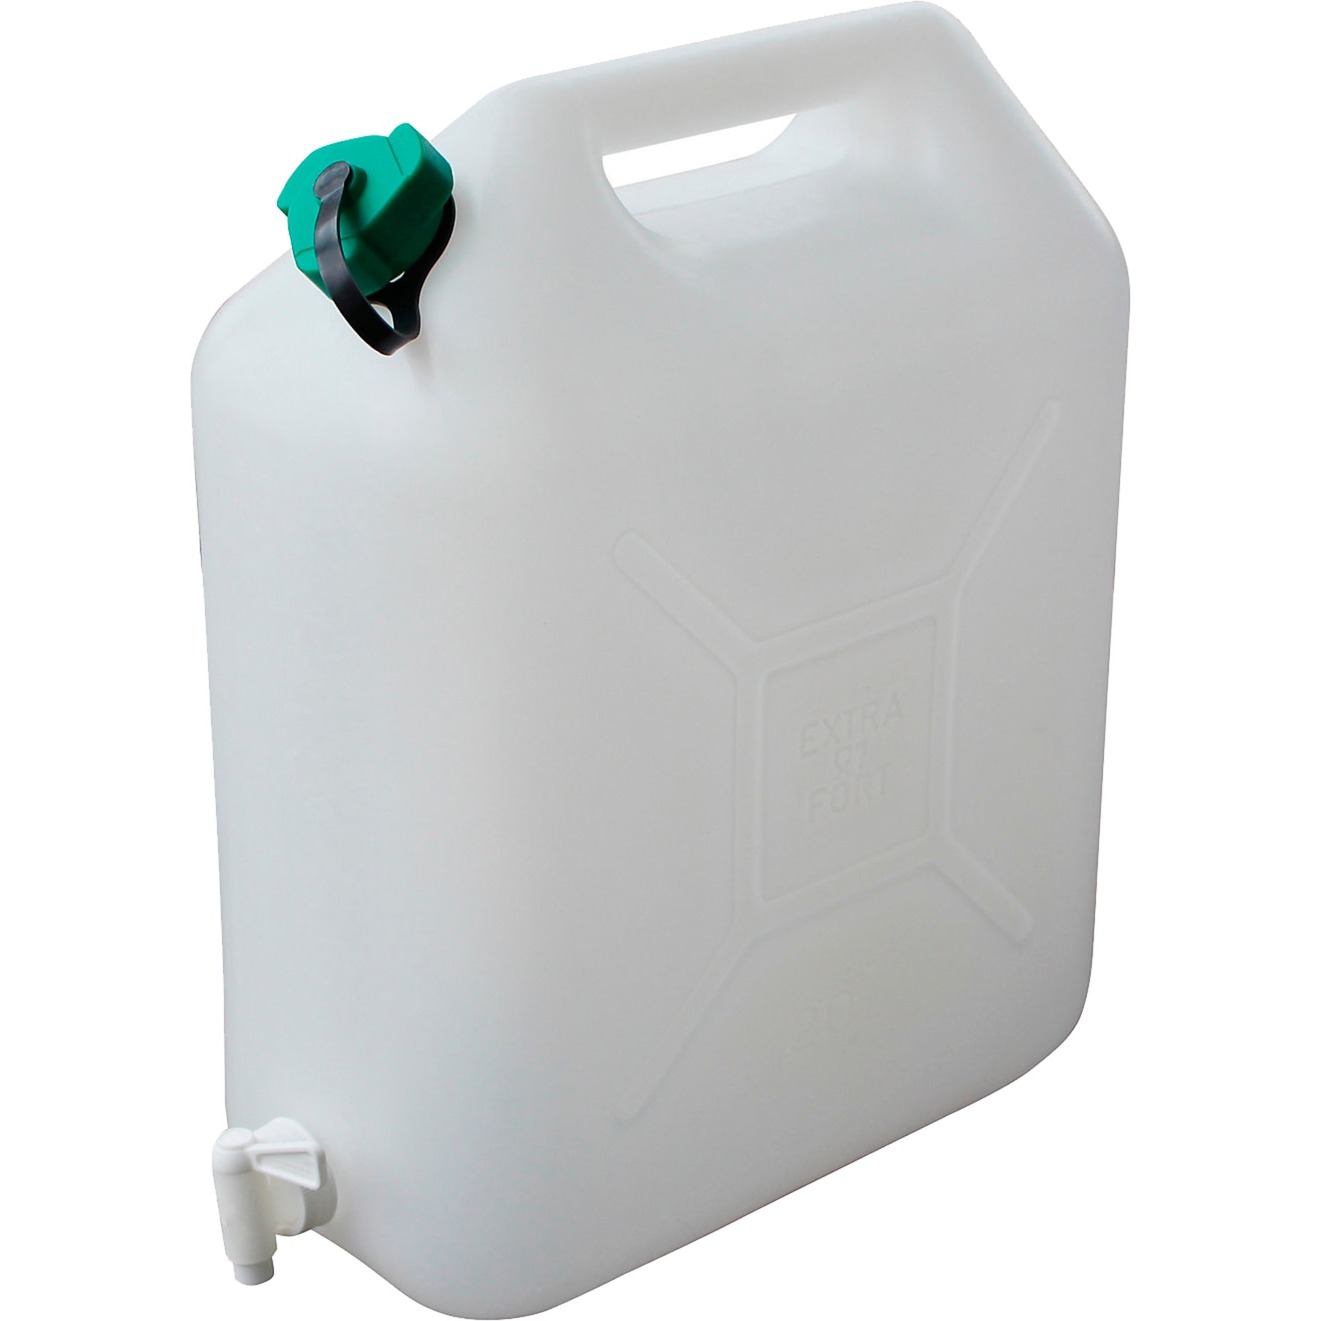 Image of Alternate - Wasserkanister 20 L, Wasserbehälter online einkaufen bei Alternate